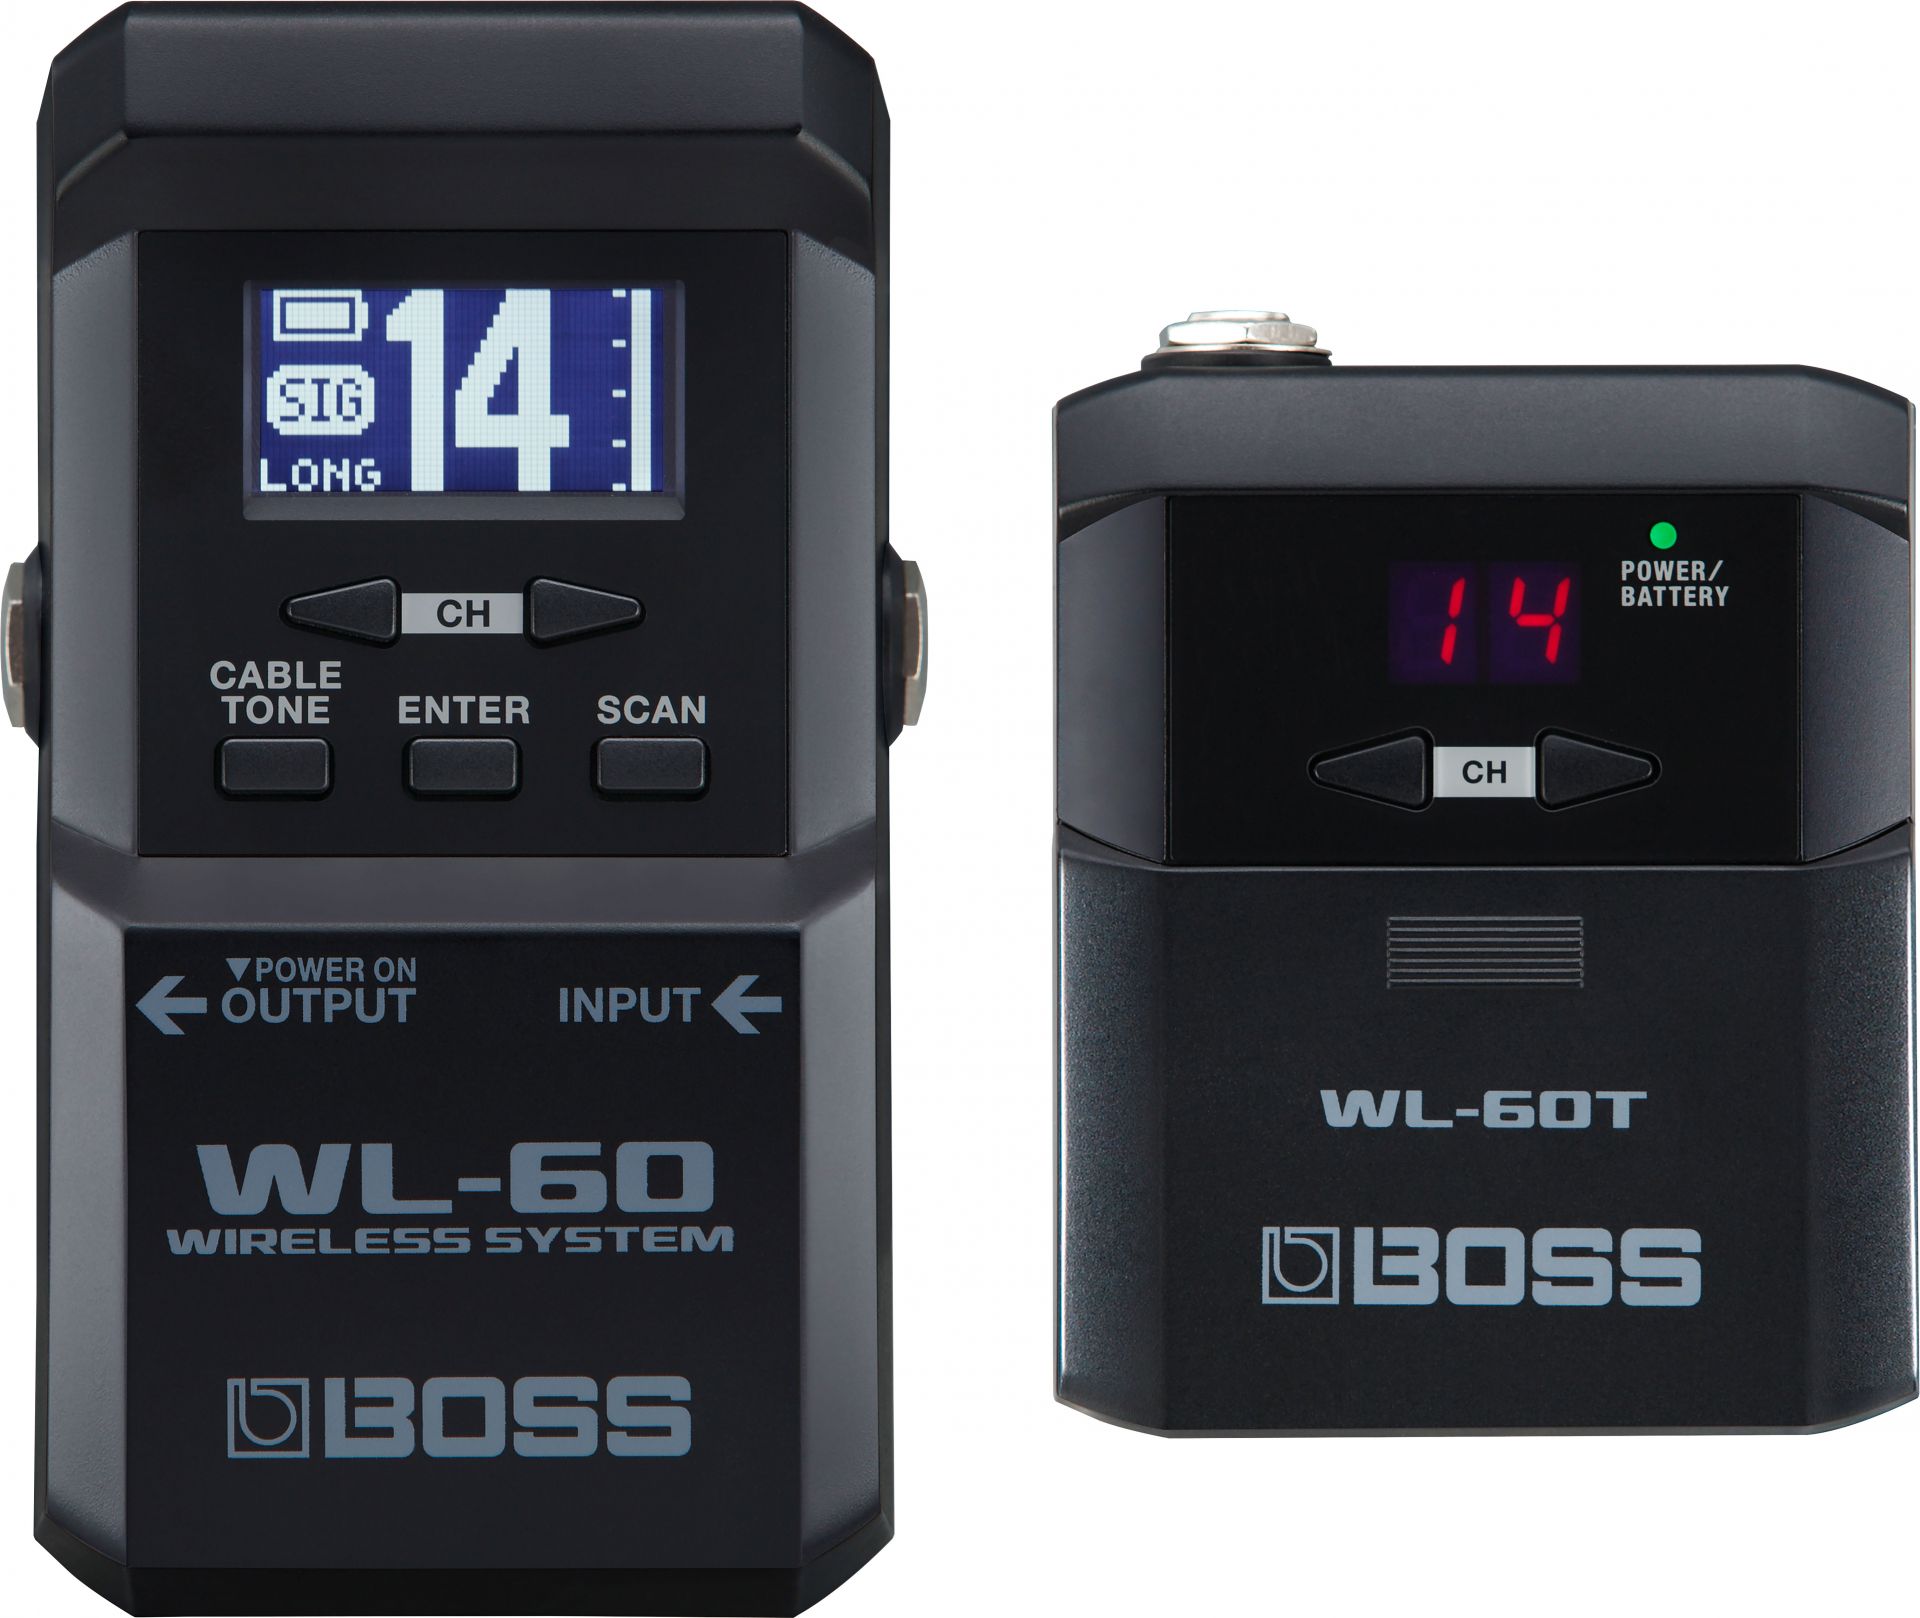 BOSSからワイヤレスシステムの新商品！！14チャンネルをオートスキャンで簡単セットアップ！”WL-60”発売！ **担当より WL-60は、BOSS独自のテクノロジーにより音の遅れや音質劣化を極限まで排除し、超高音質かつ安定した信号伝送を実現したワイヤレスシステム。レシーバーには大型LCDを搭載し […]